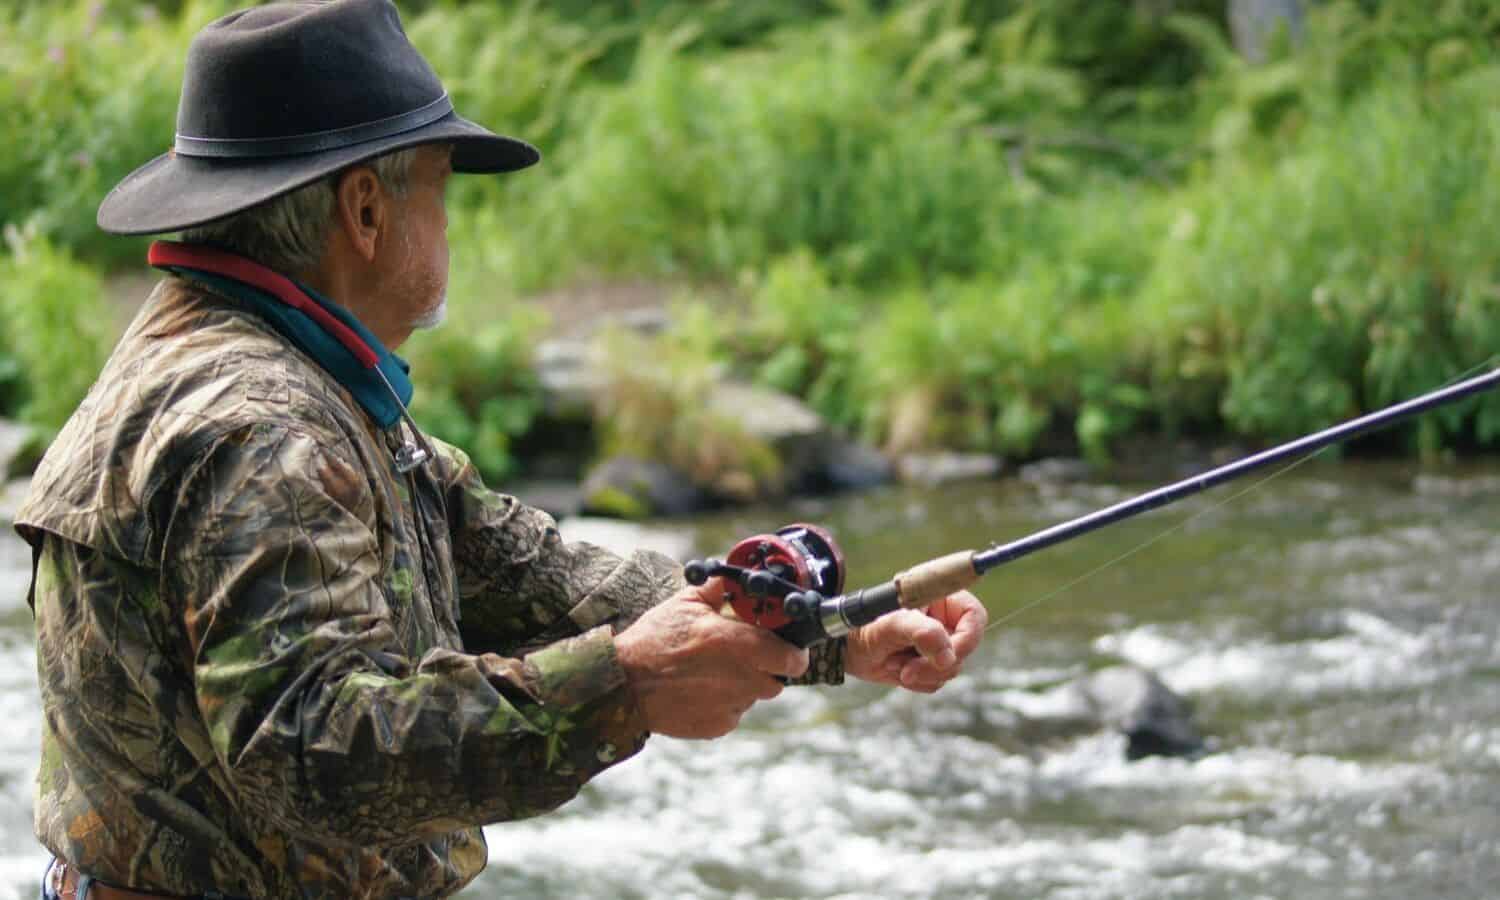 redneck fishing tips